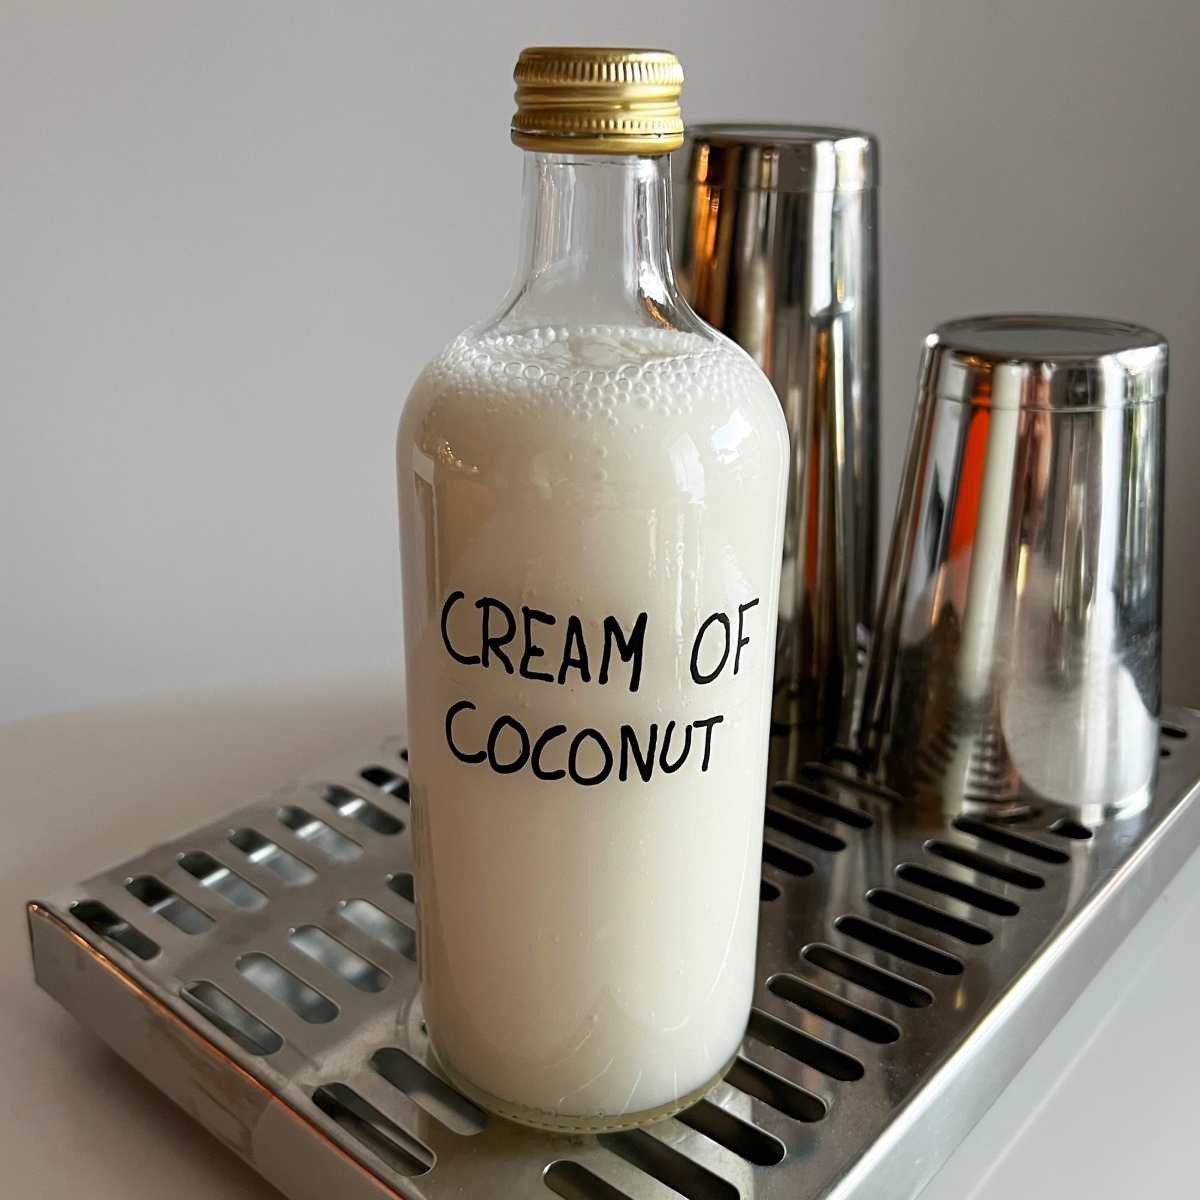 Cream of coconut